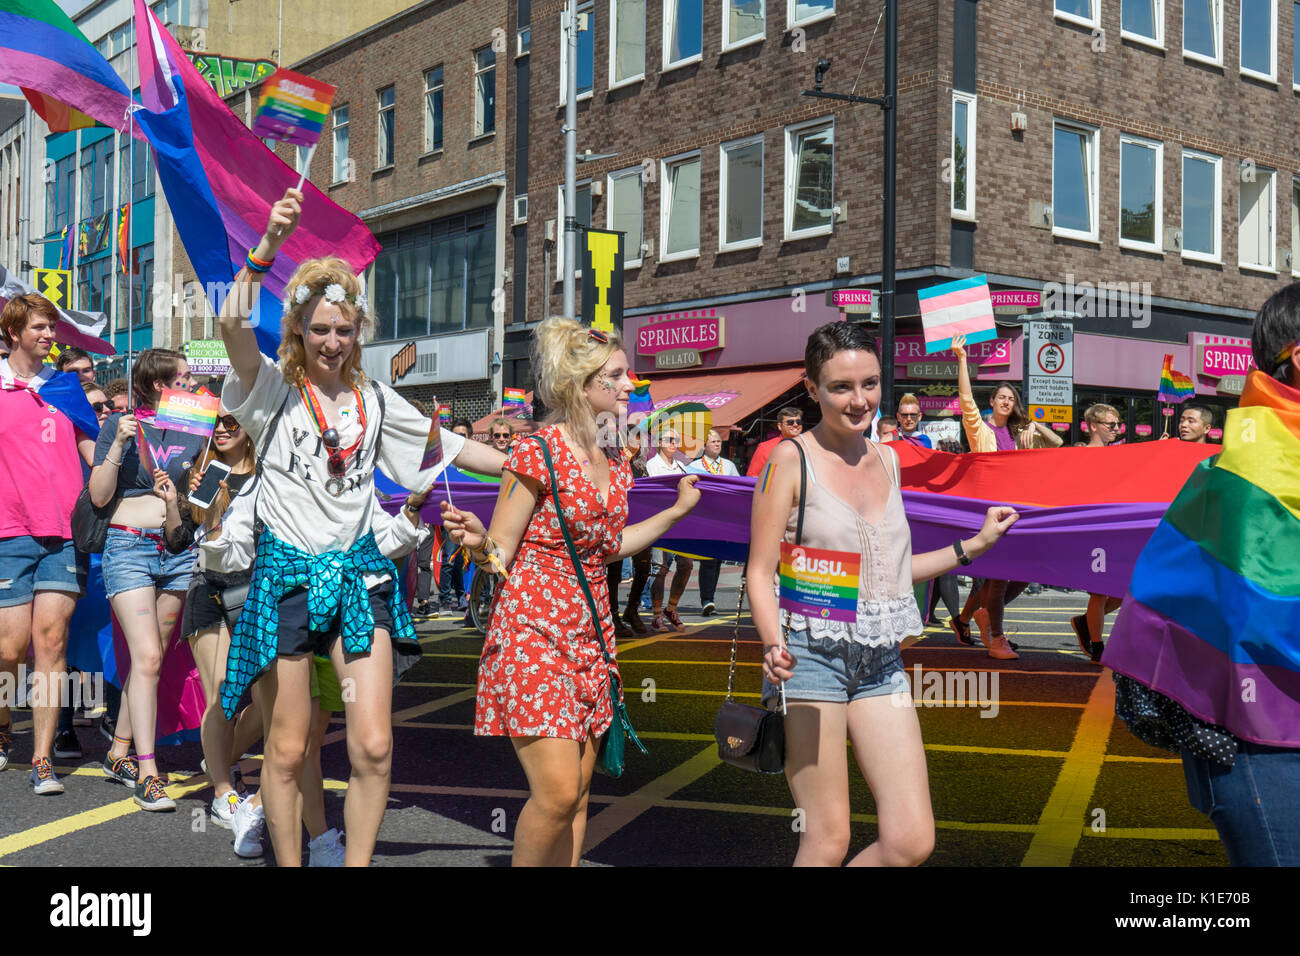 Southampton, Reino Unido. 26 de agosto de 2017. La gente marchando por las calles de Southampton para participar en un desfile muy colorido y vibrante en el Festival Anual del orgullo de Southampton 2017. Este es el segundo año del festival que se celebra. Foto de stock